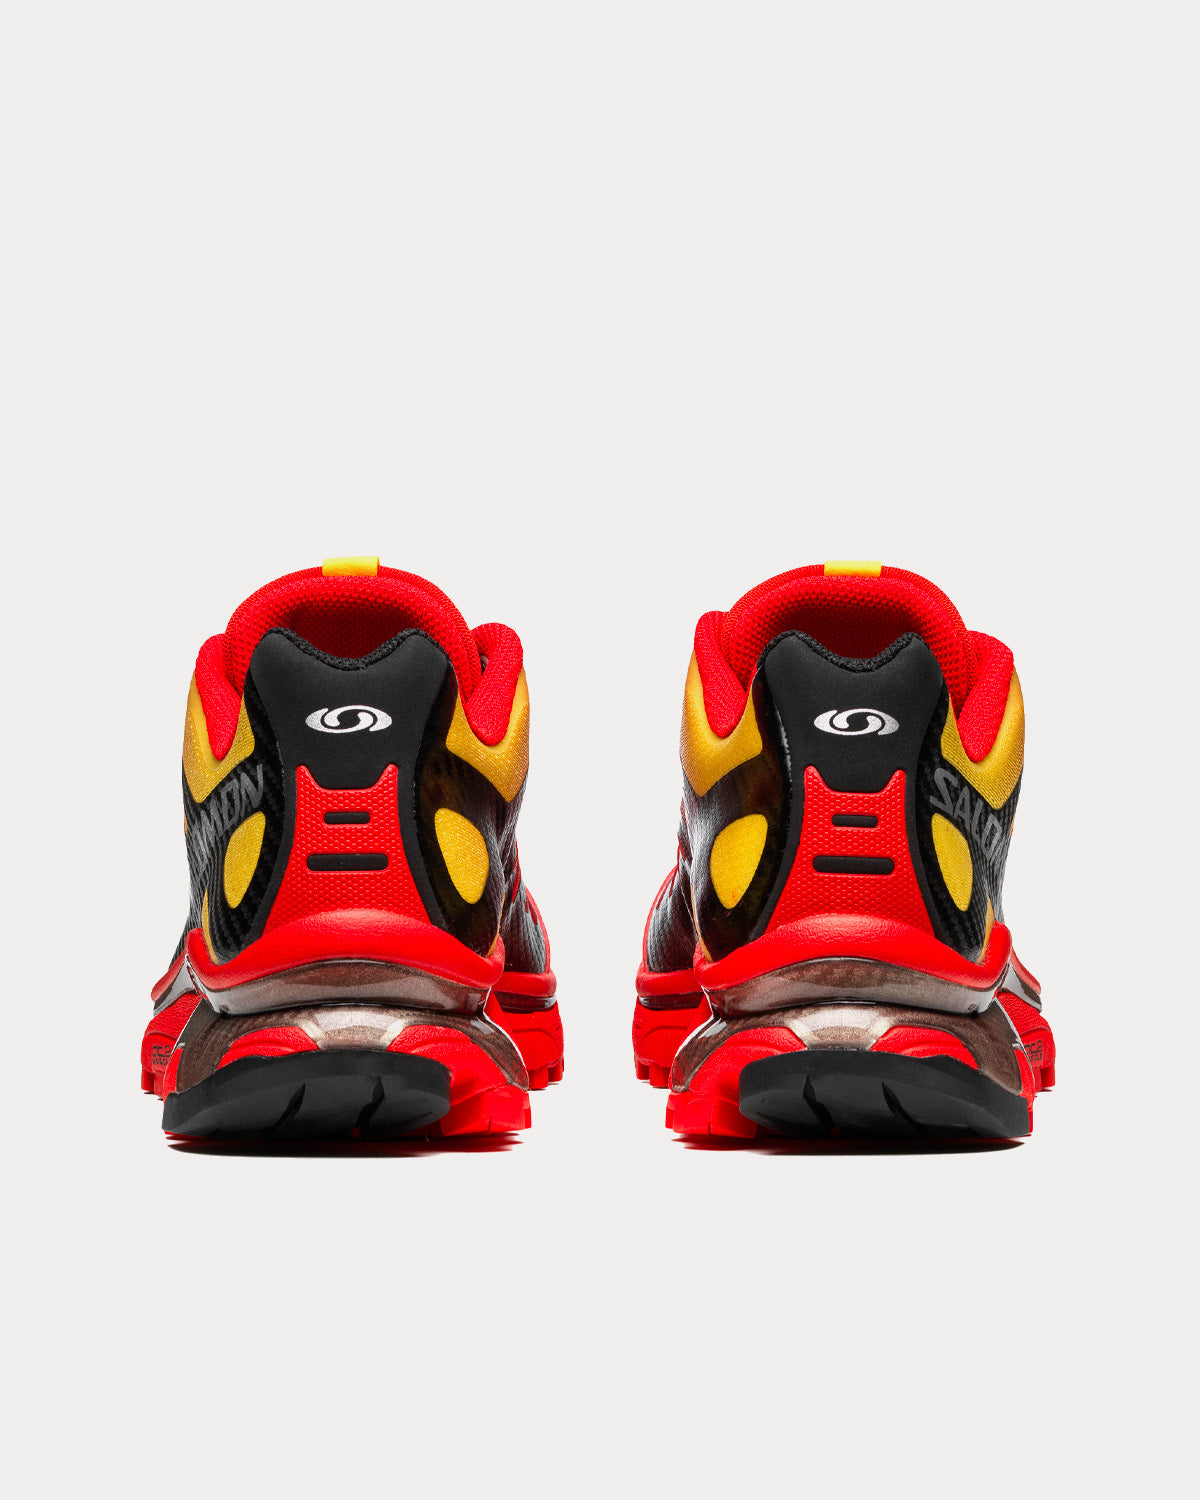 Salomon XT-4 OG Fiery Red / Black / Empire Yellow Low Top Sneakers - Sneak  in Peace